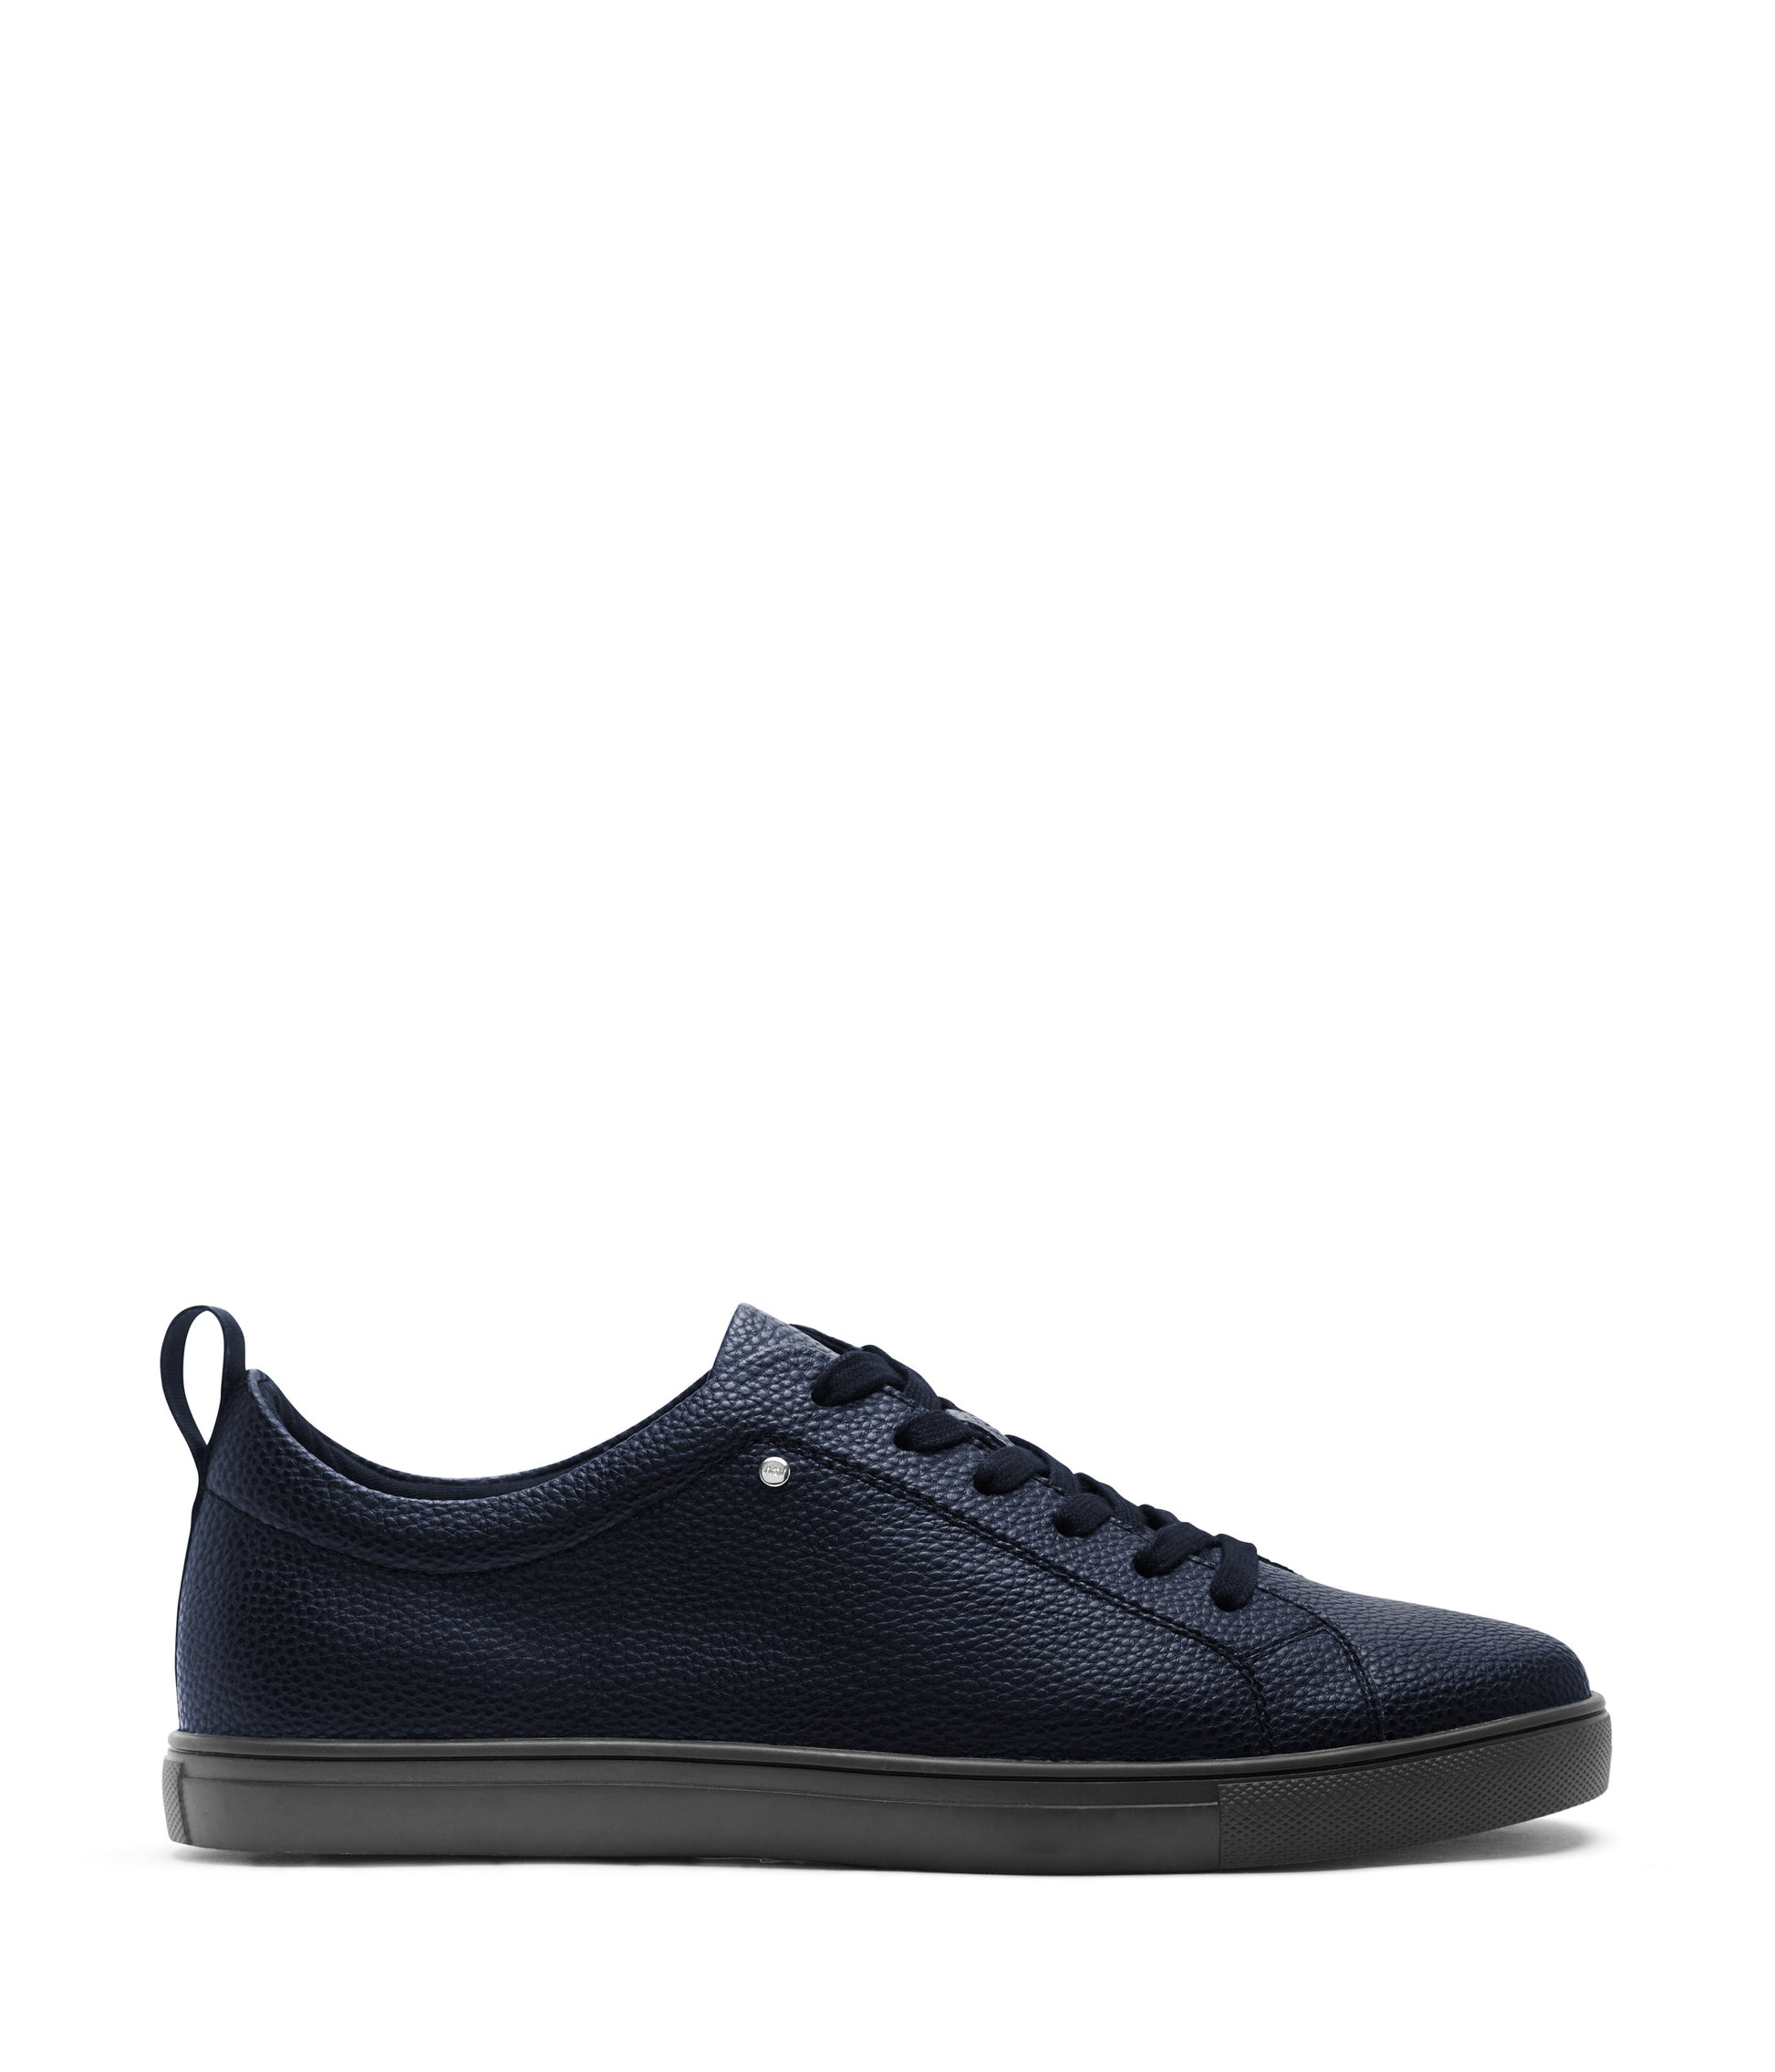 variant:: bleu marin -- yuvi shoe bleu marin